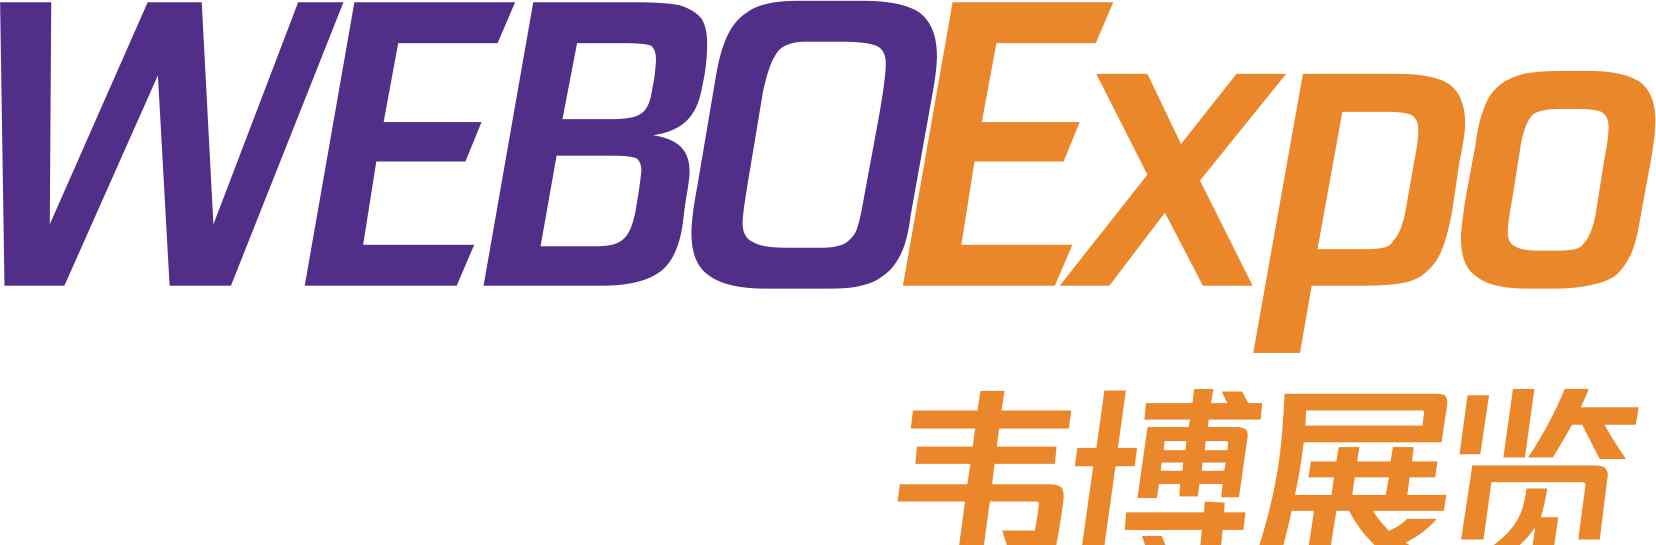 上海施能电器设备厂 2017年中国国际清洁展展商名单